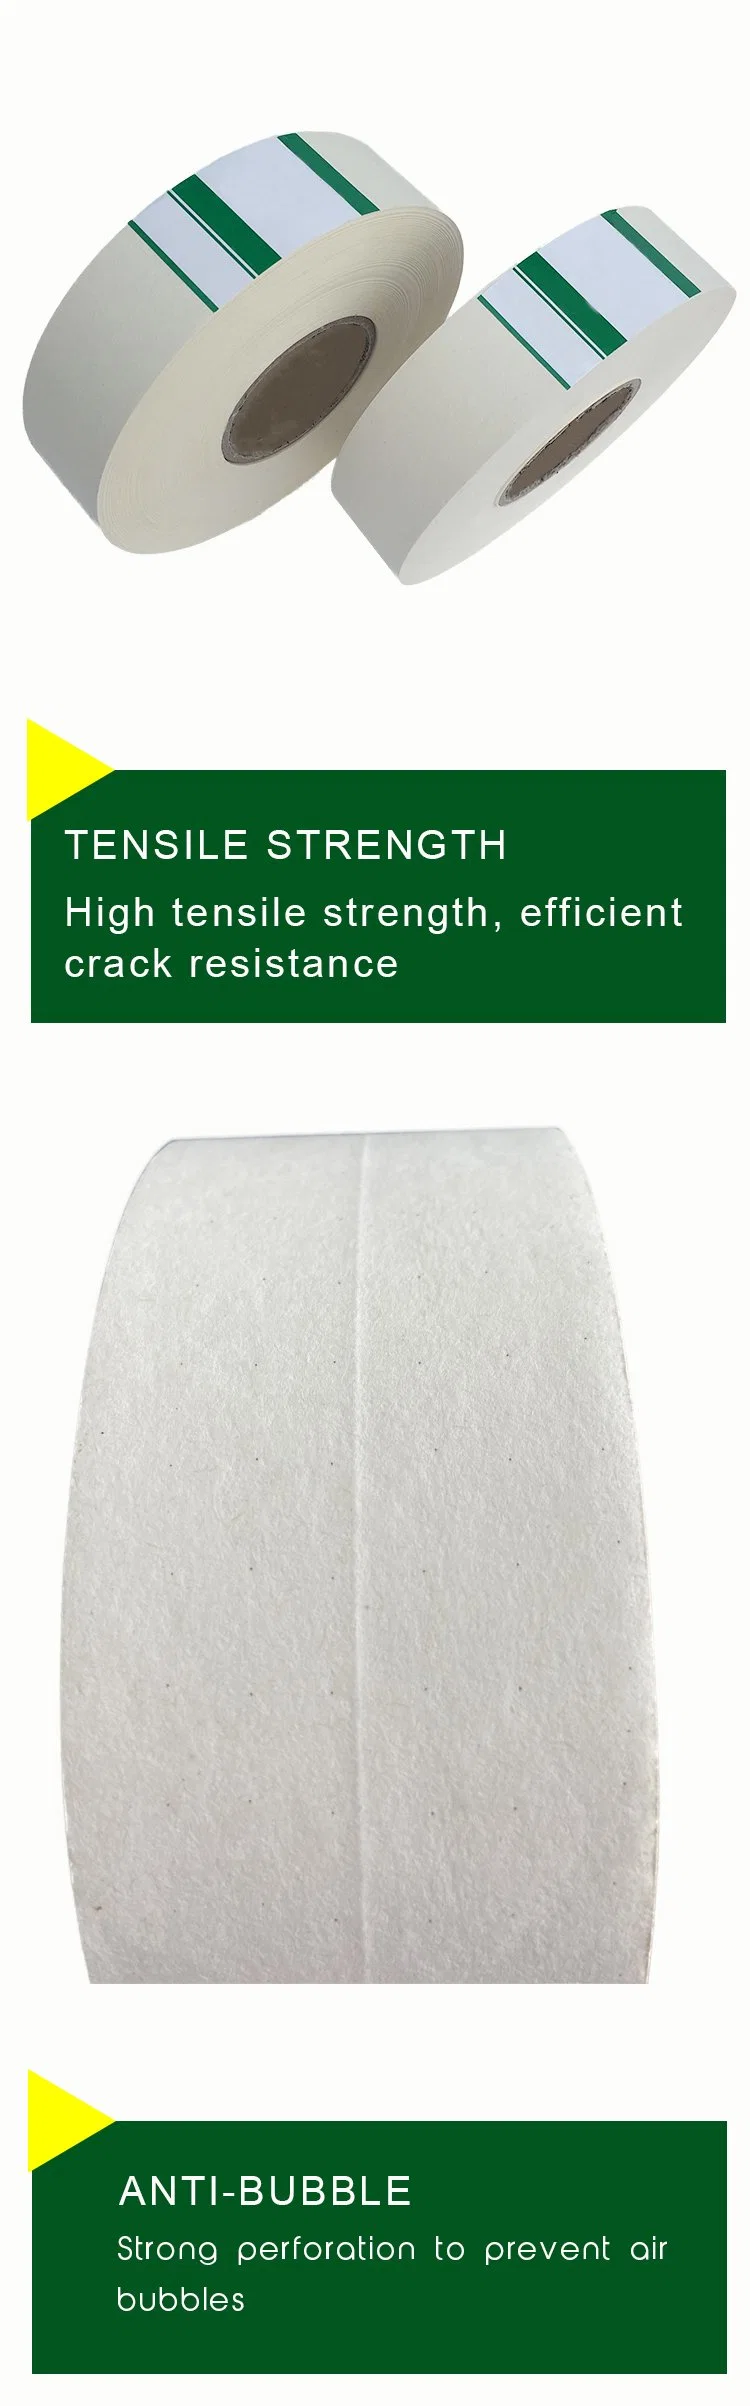 Plasterboard Waterproof High Tensile Strength Drywall Joint Paper Tape